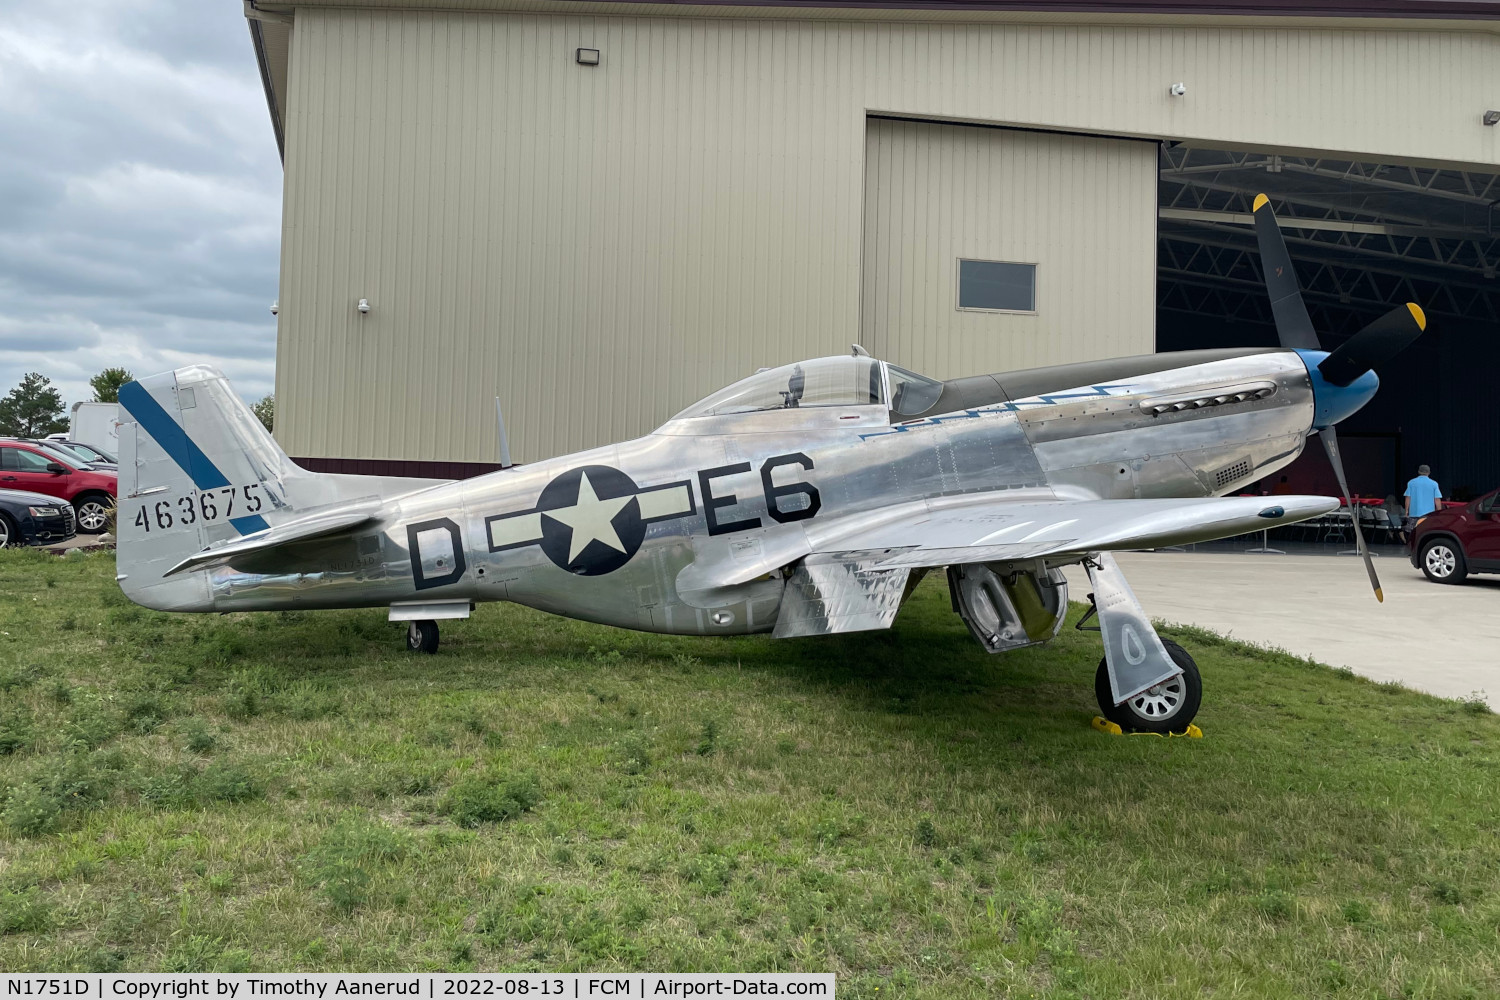 N1751D, 1944 North American P-51D Mustang C/N 122-31401 (44-63675), 1944 North American P-51D Mustang, c/n: 122-31401 (44-63675)